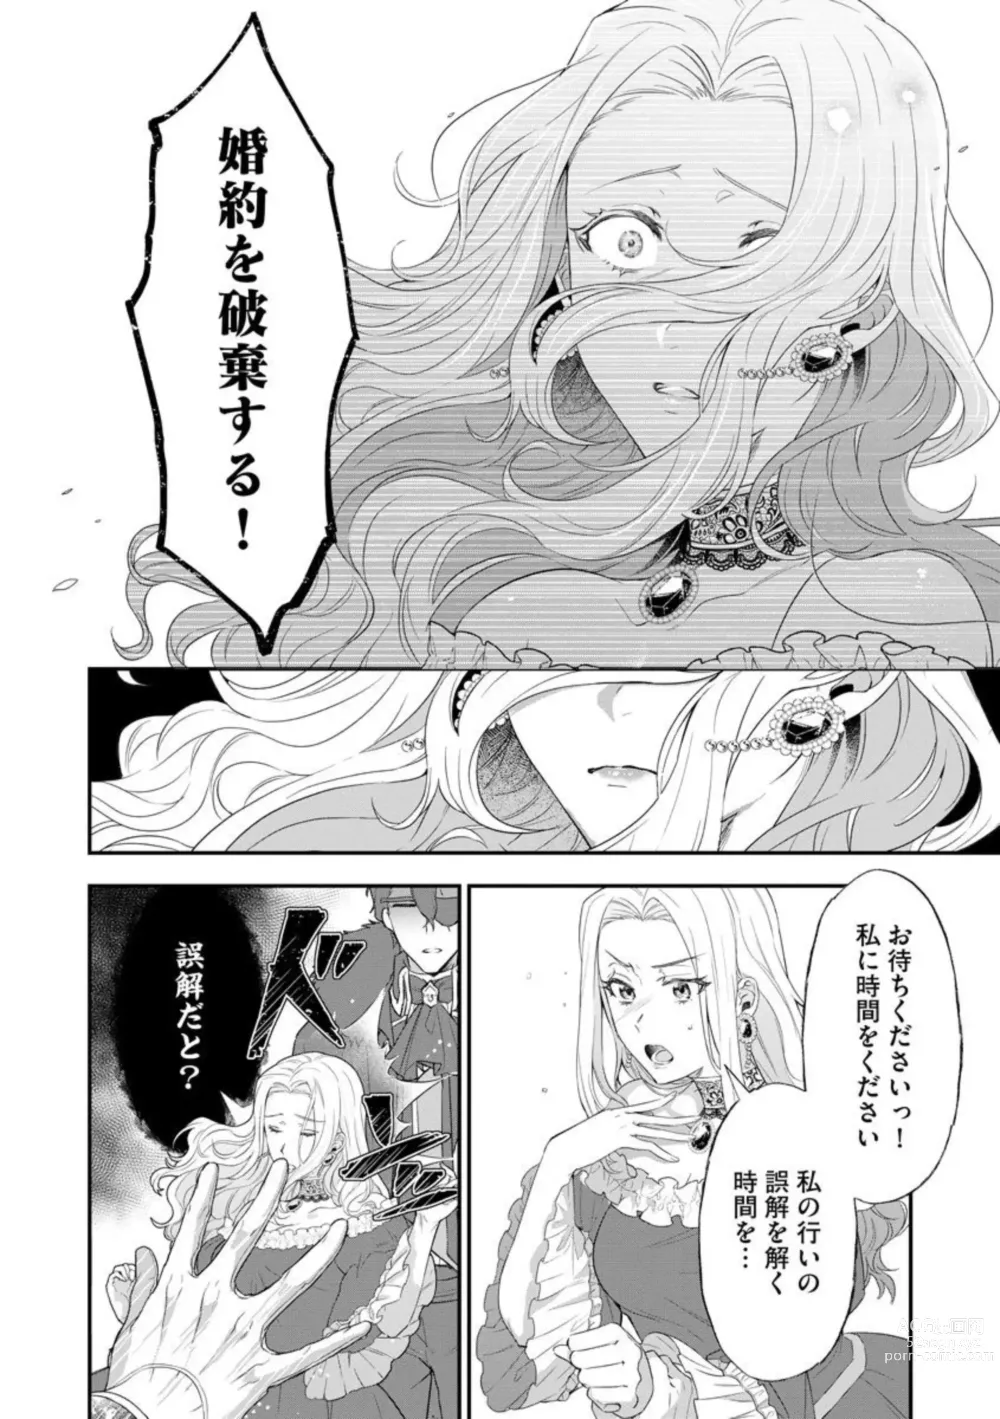 Page 14 of manga Kaibutsu Hakushaku no Amai Hana Akuyaku Reijou wa Bed de Midare Chiru 1